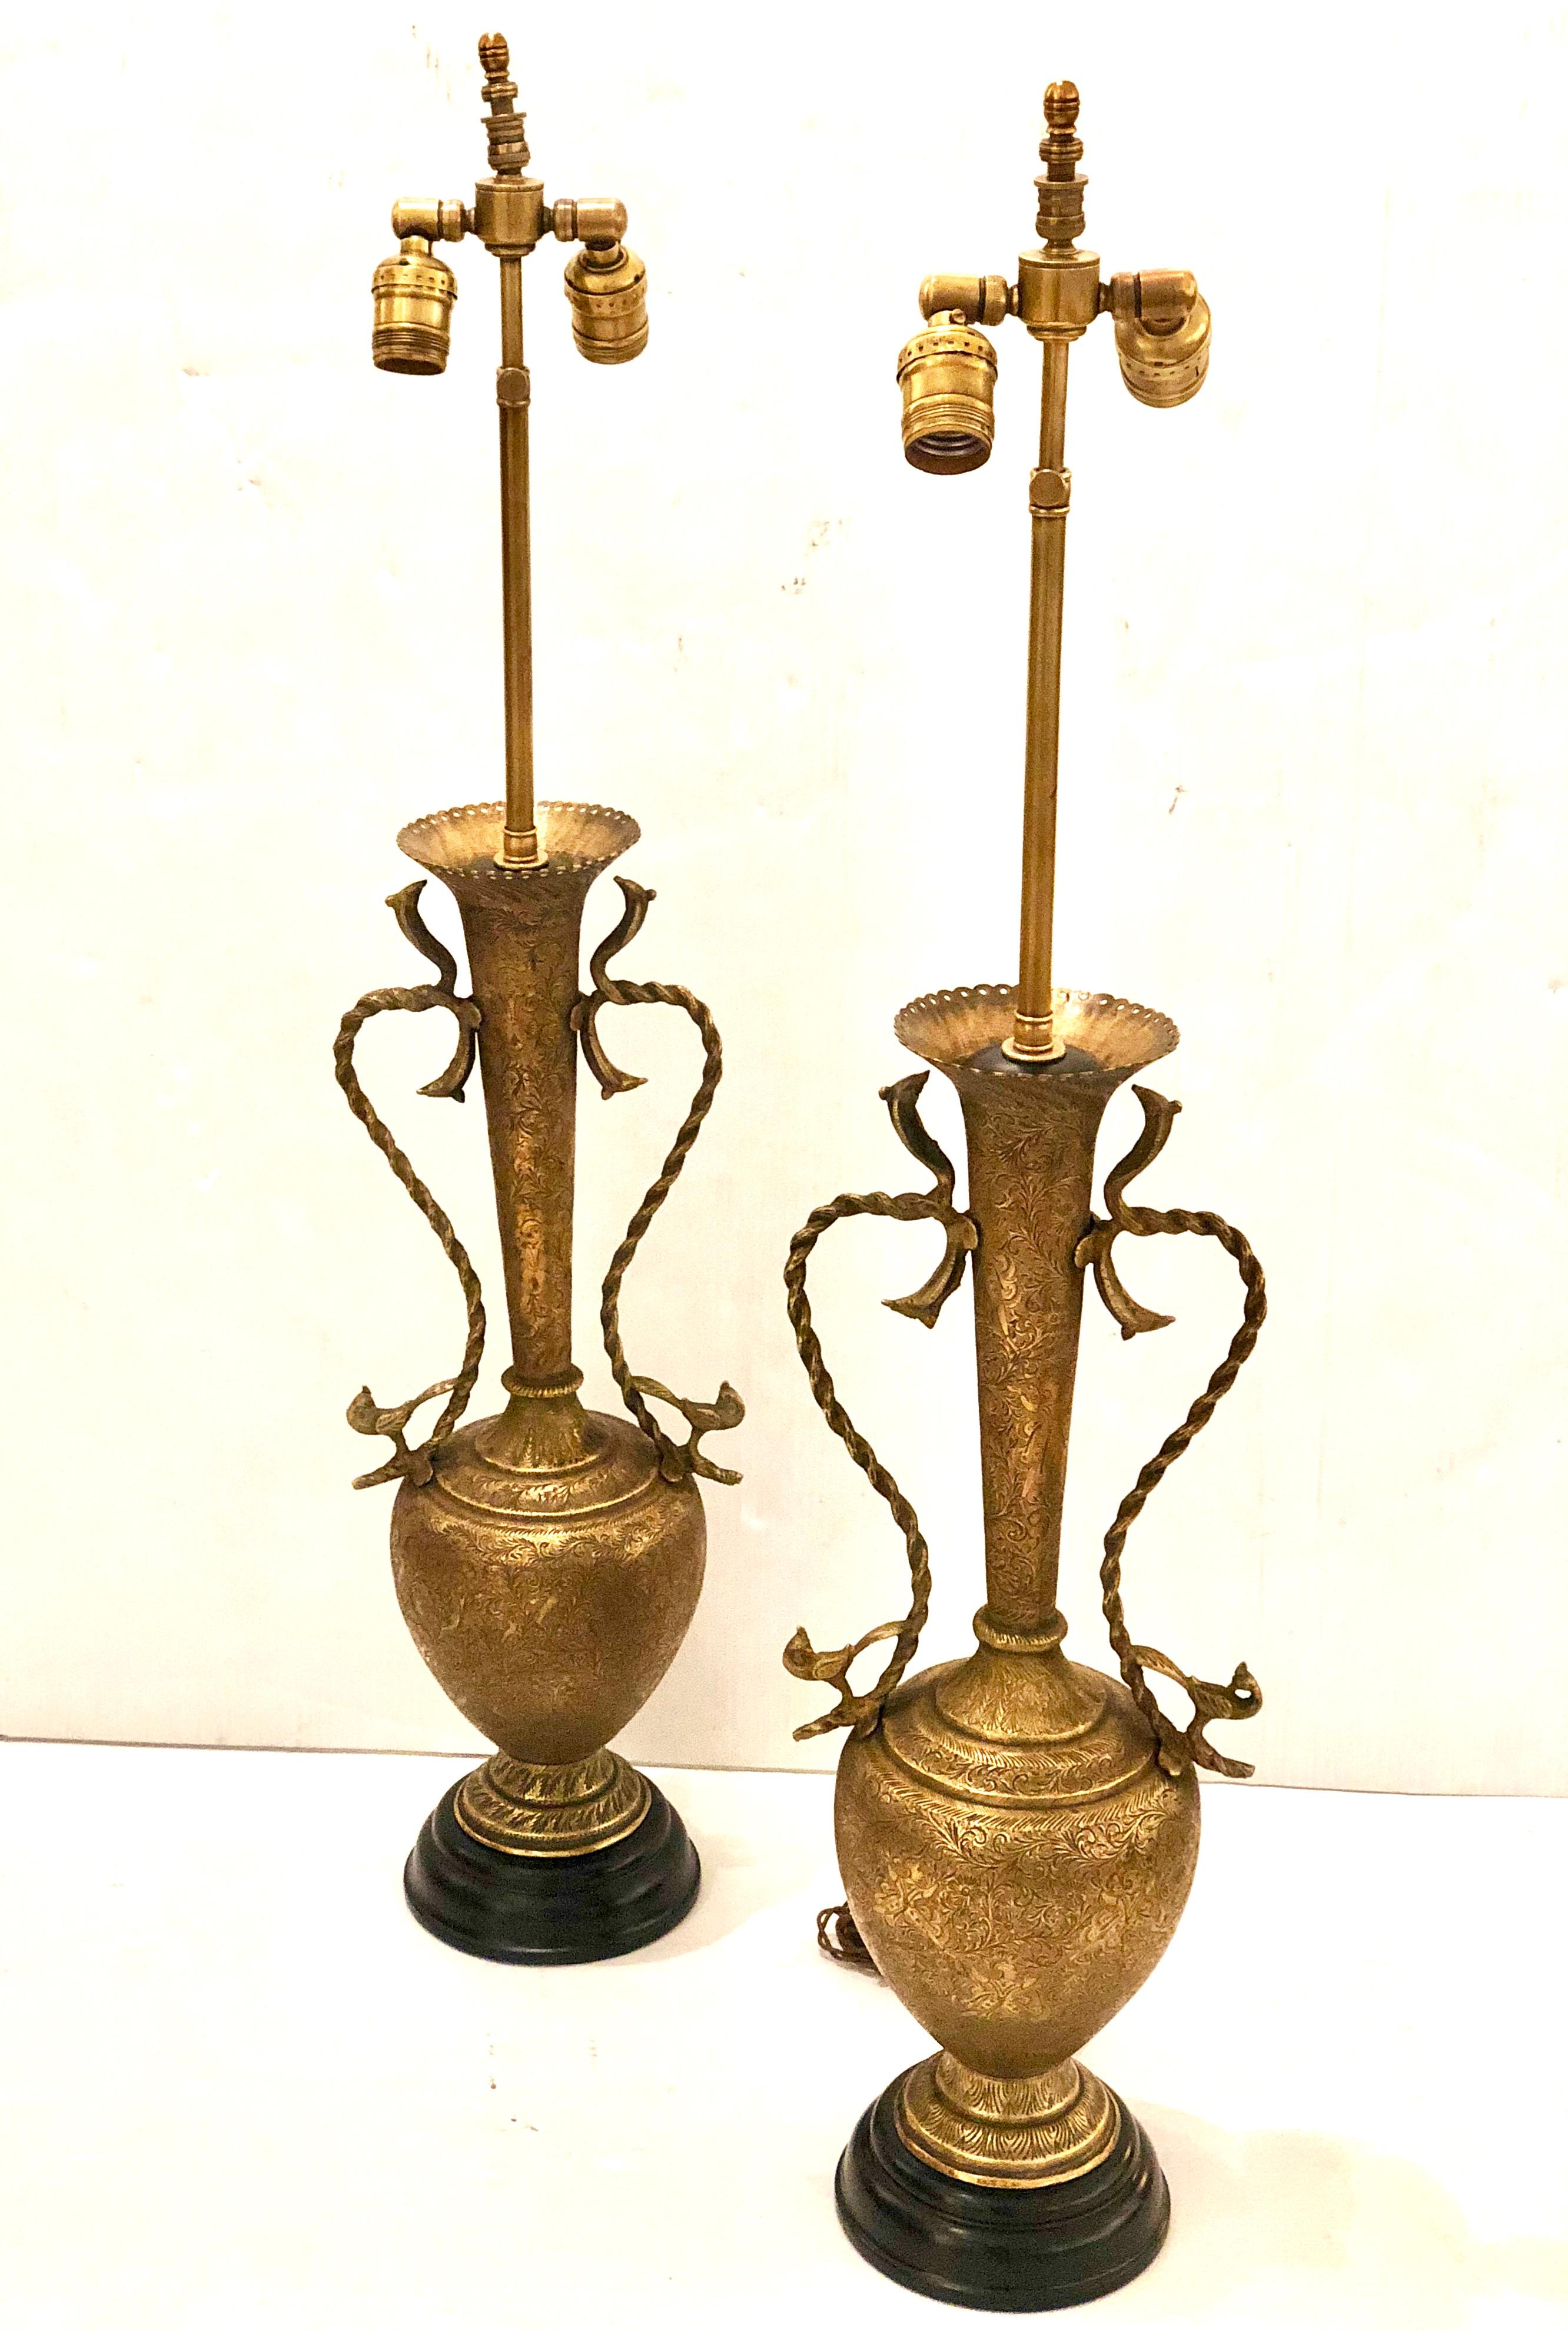 Schönes Paar marokkanische Messing gehämmert antike Tischlampen, frisch mit Stoff Schnur neu verdrahtet wir glauben, dass diese marokkanischen sind, aber wir sind nicht sicher Lampen sind in gutem Zustand, und Lampenschirme sind nicht enthalten.